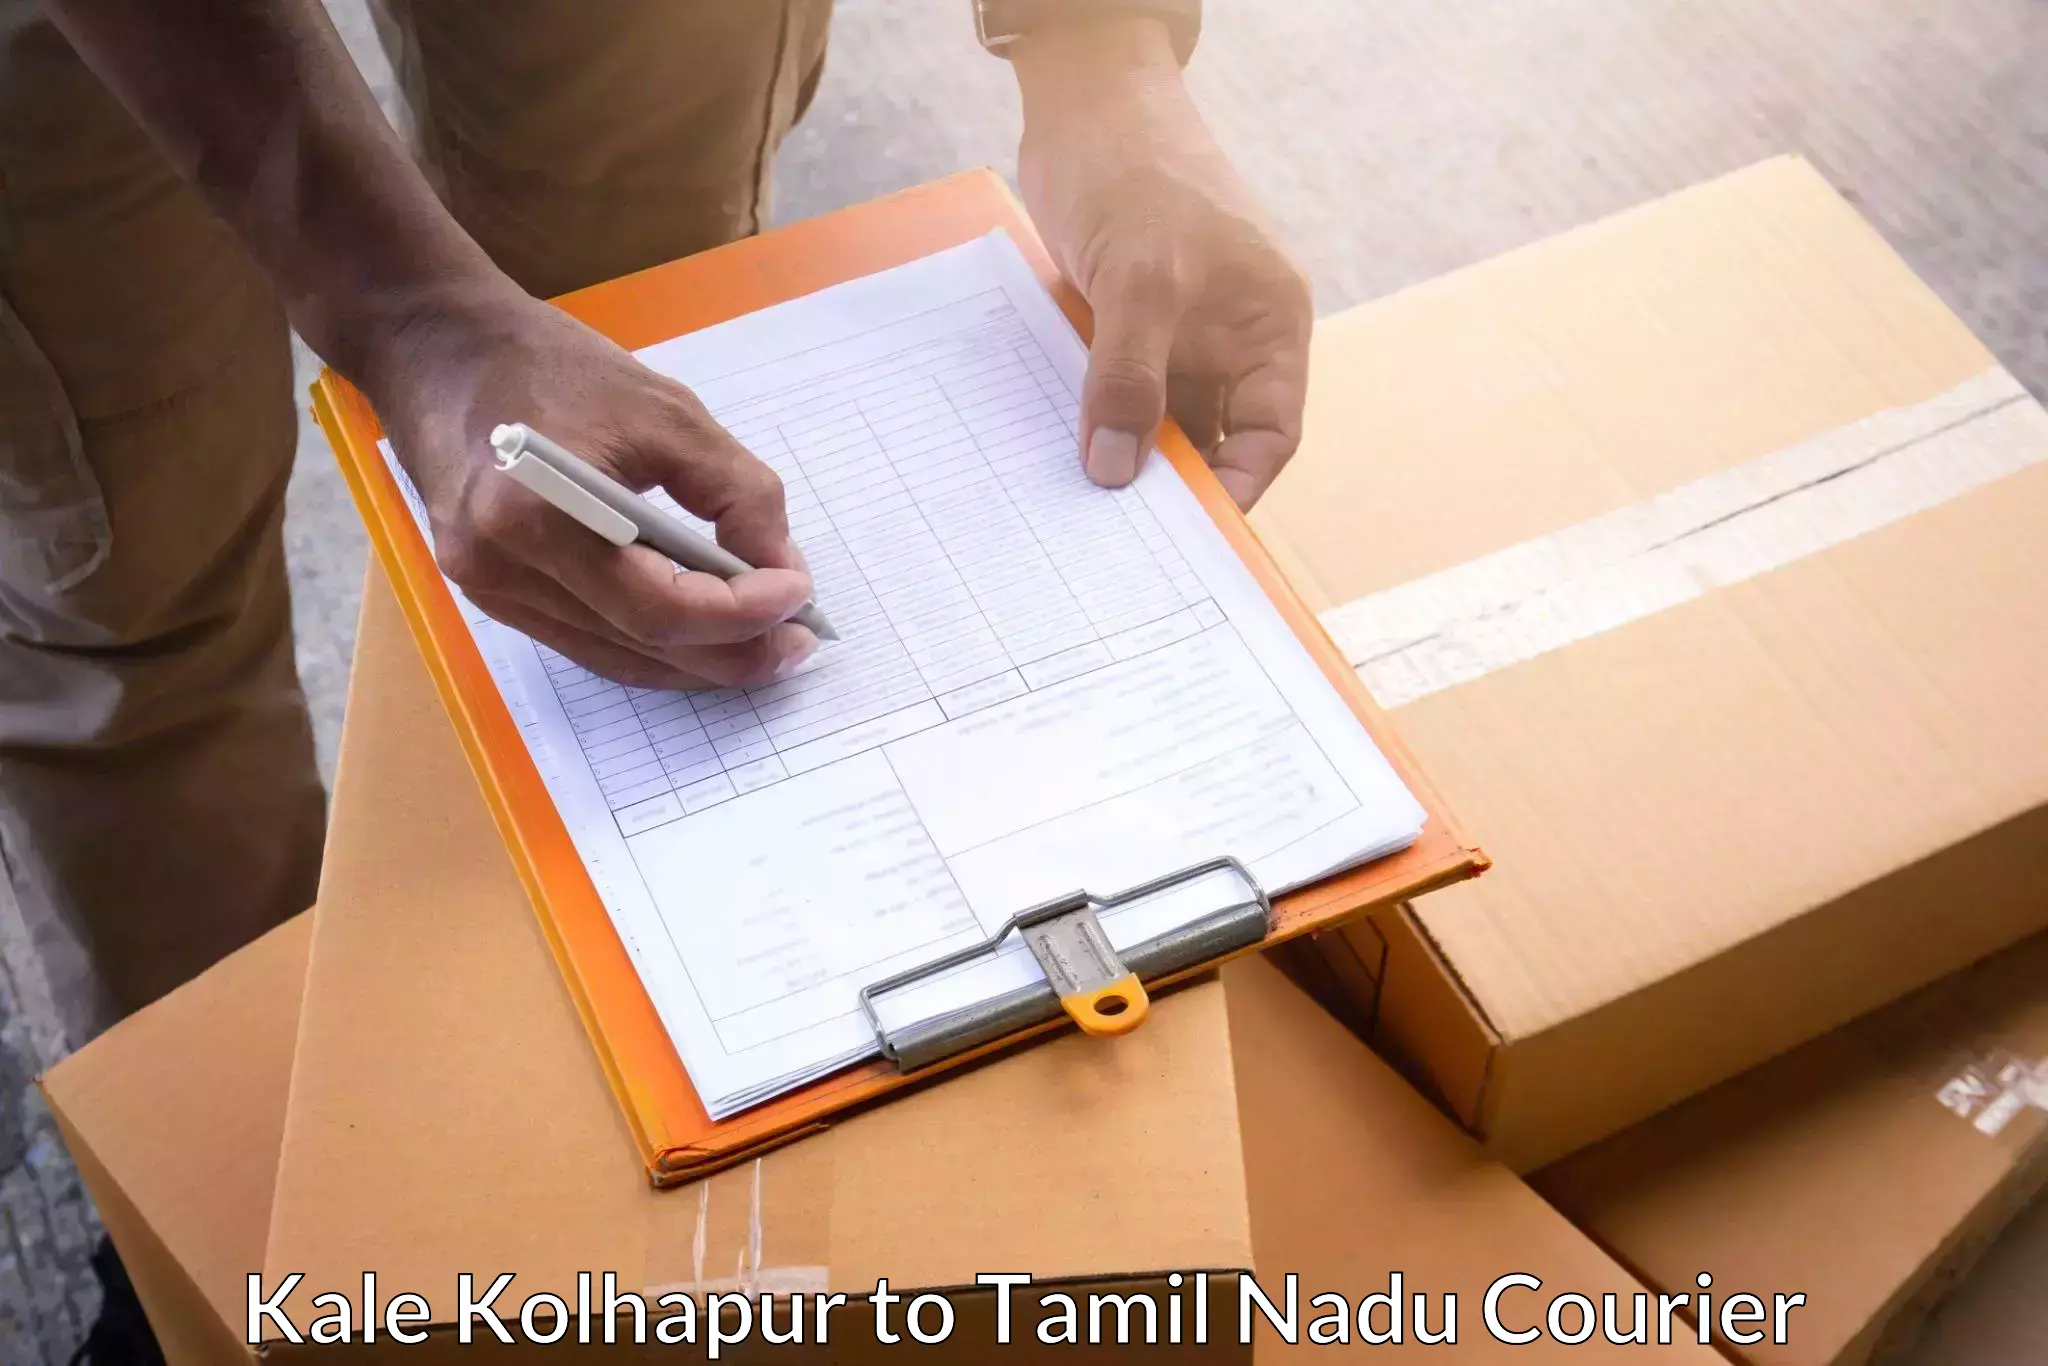 Courier service comparison Kale Kolhapur to Viralimalai